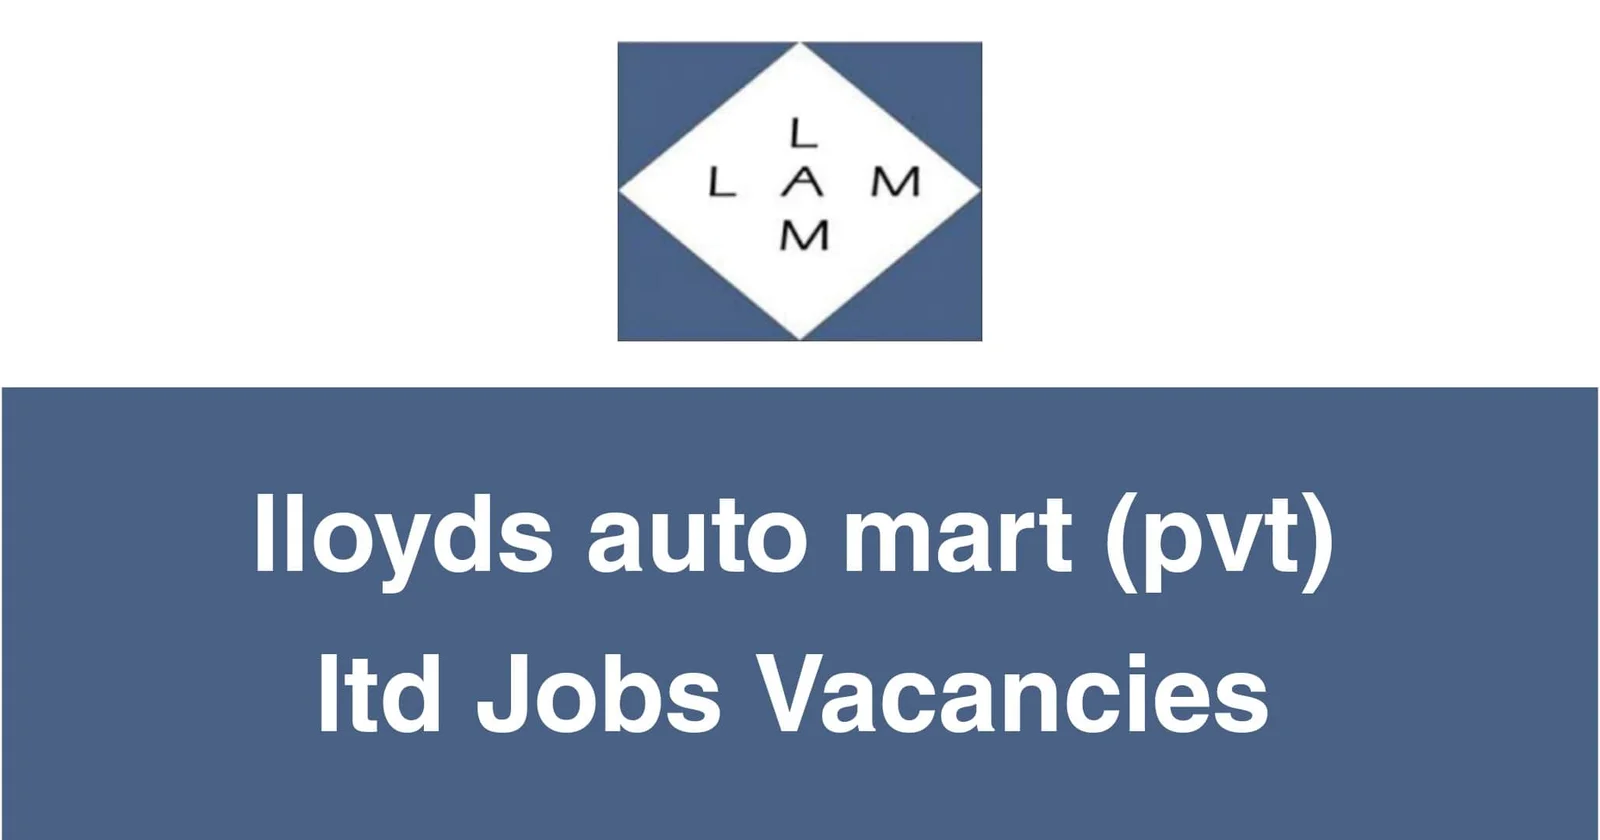 Lloyds Auto Mart (Pvt) Ltd Jobs Vacancies